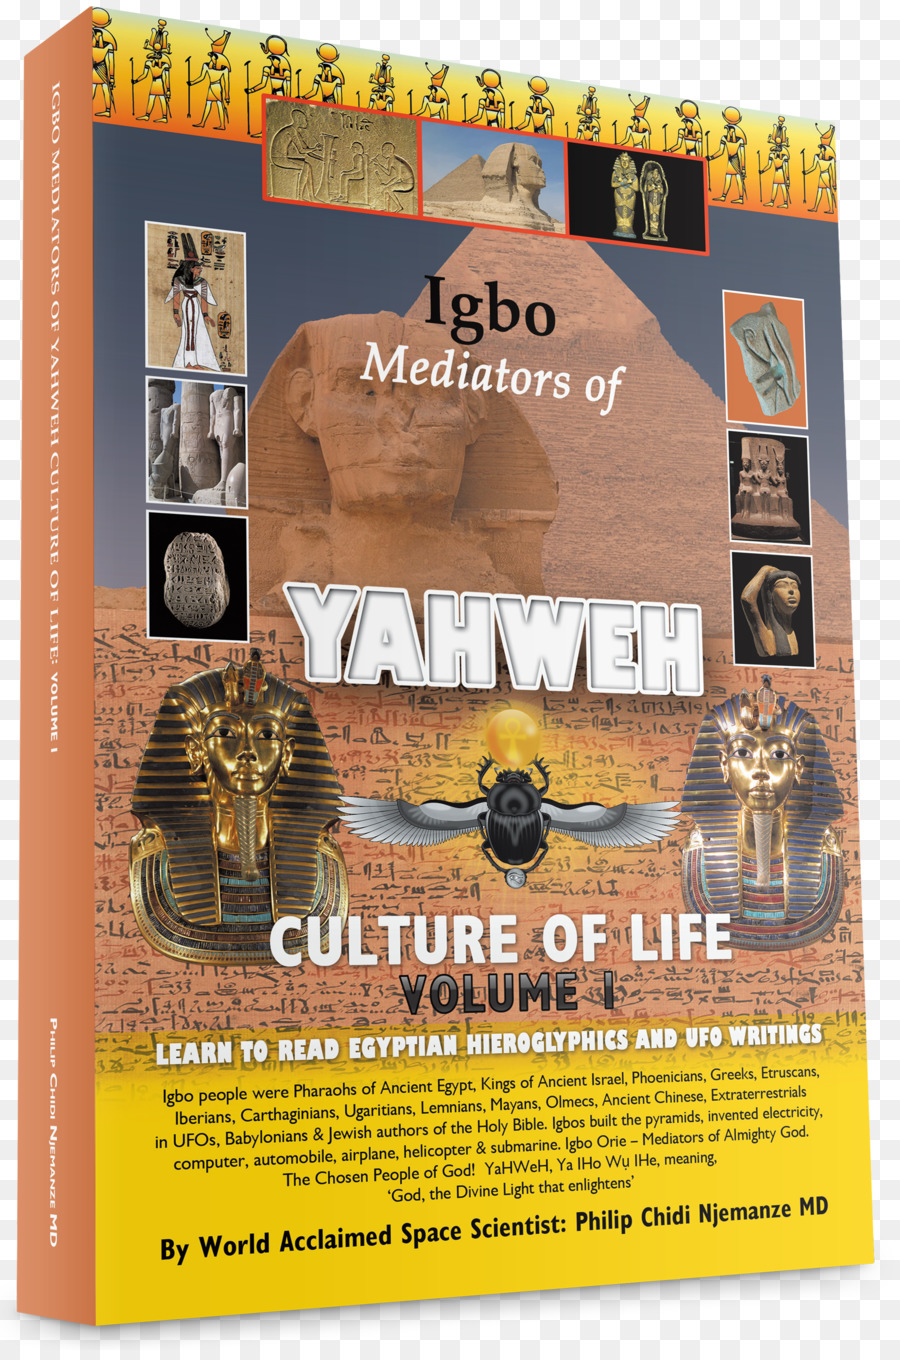 Igbo Mediatoren von Jahwe Kultur des Lebens: Band 1:Lernen, zu Lesen, die ägyptischen Hieroglyphen und Ufo-Schriften Poster - andere